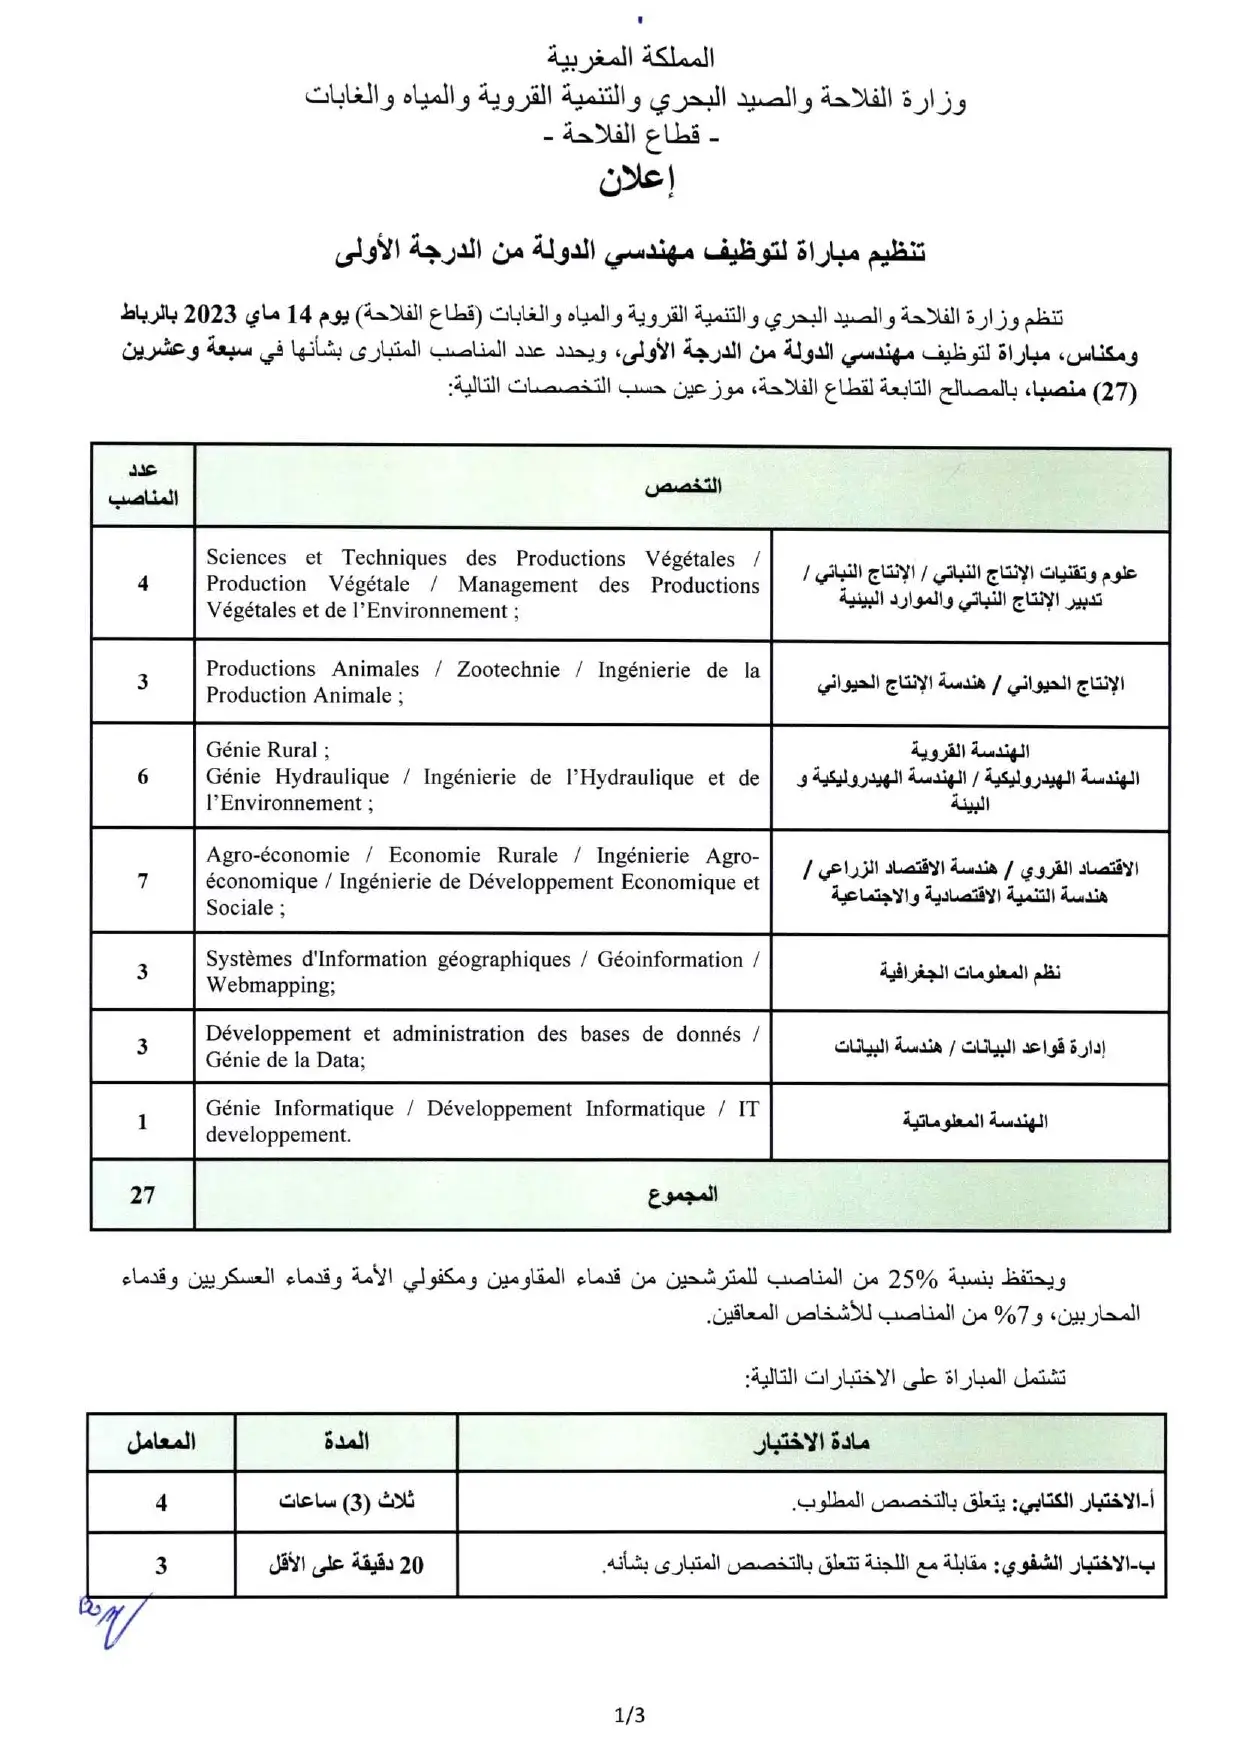 Concours Ministère de l'Agriculture 2023 (27 postes)